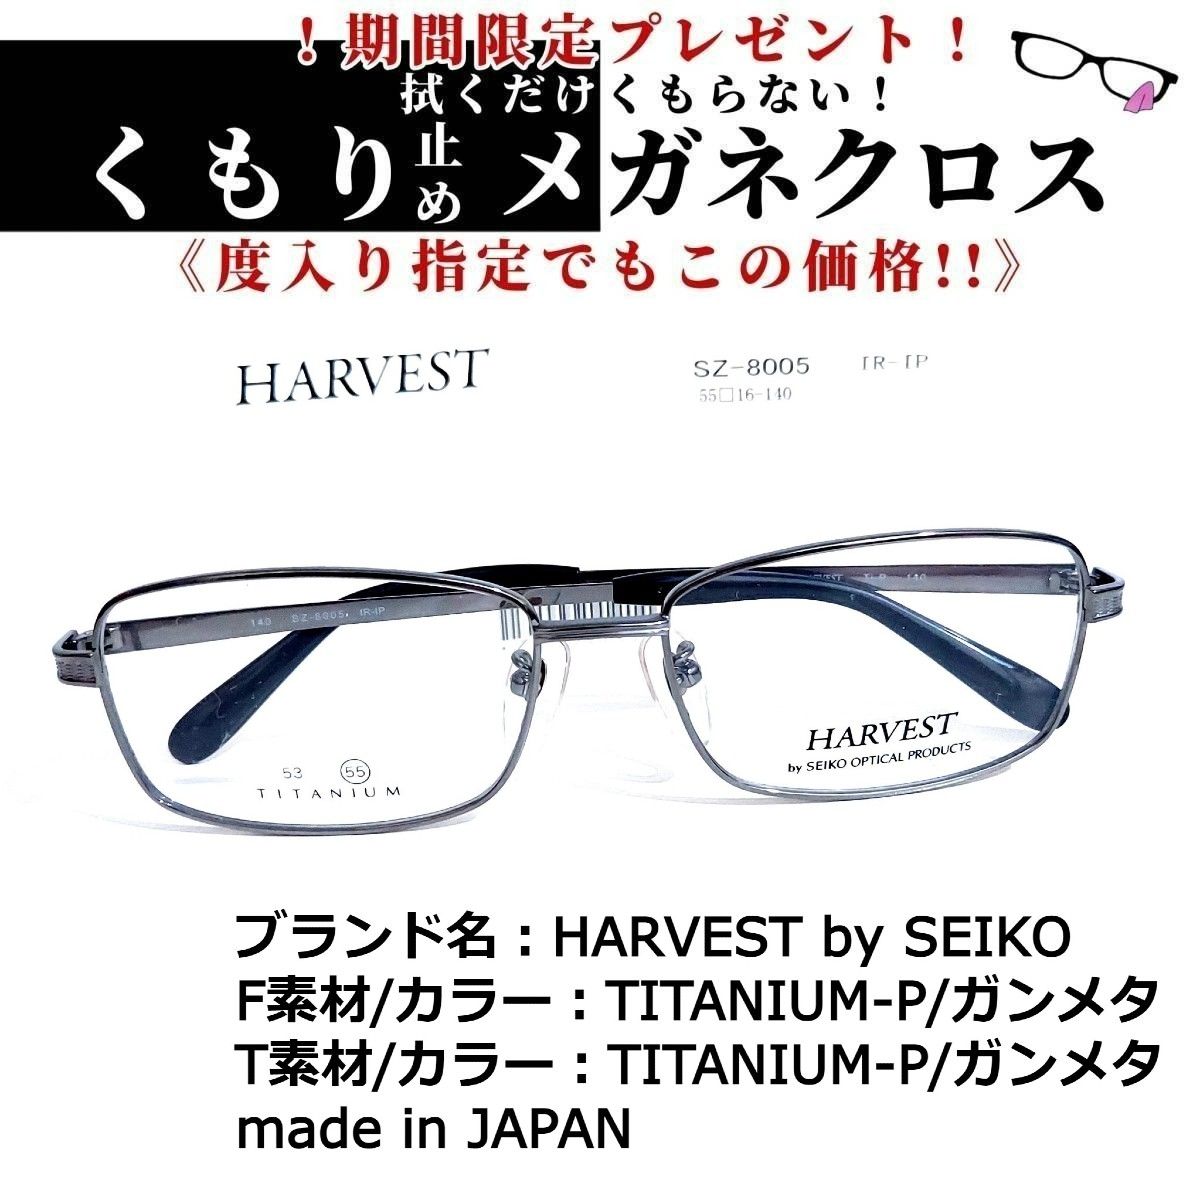 パターン No.1652メガネ HARVEST by SEIKO【度数入り込み価格】 - 通販